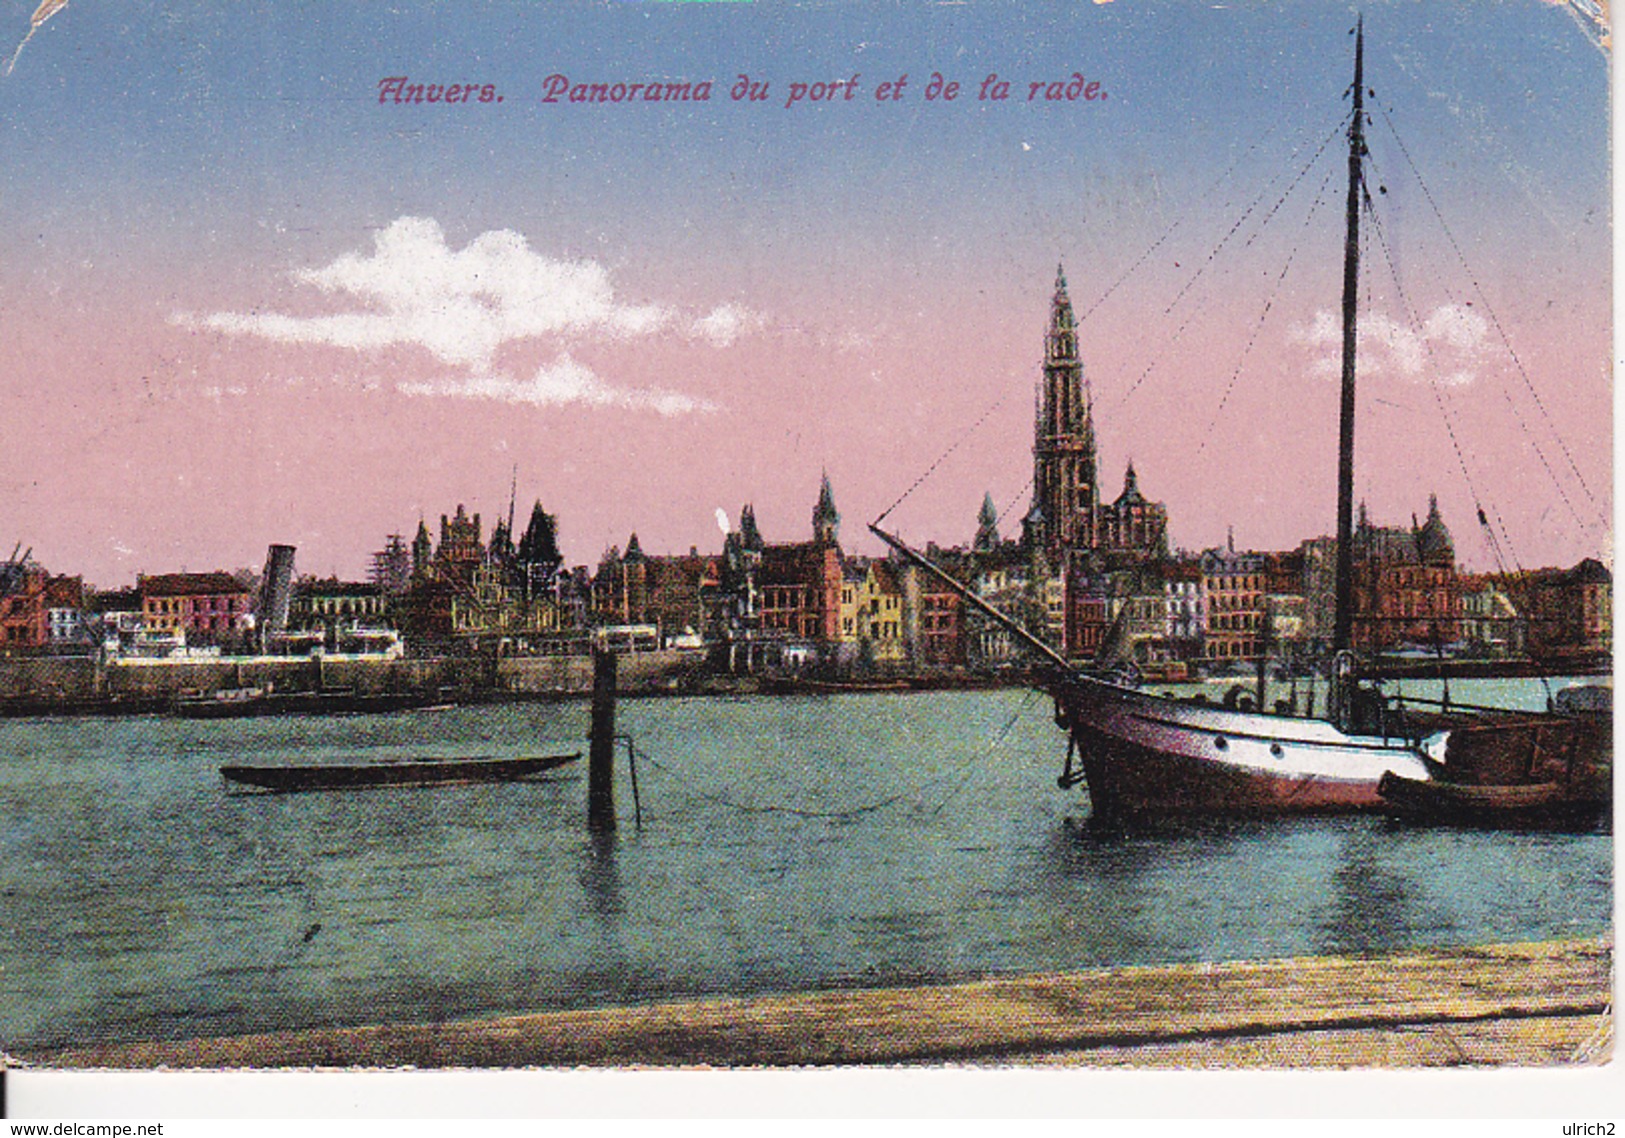 AK Anvers - Panorama Du Port Et De La Rade - Feldpost I. Ldst.-Inf.-Batl. Potsdam - 1918 (28214) - Antwerpen